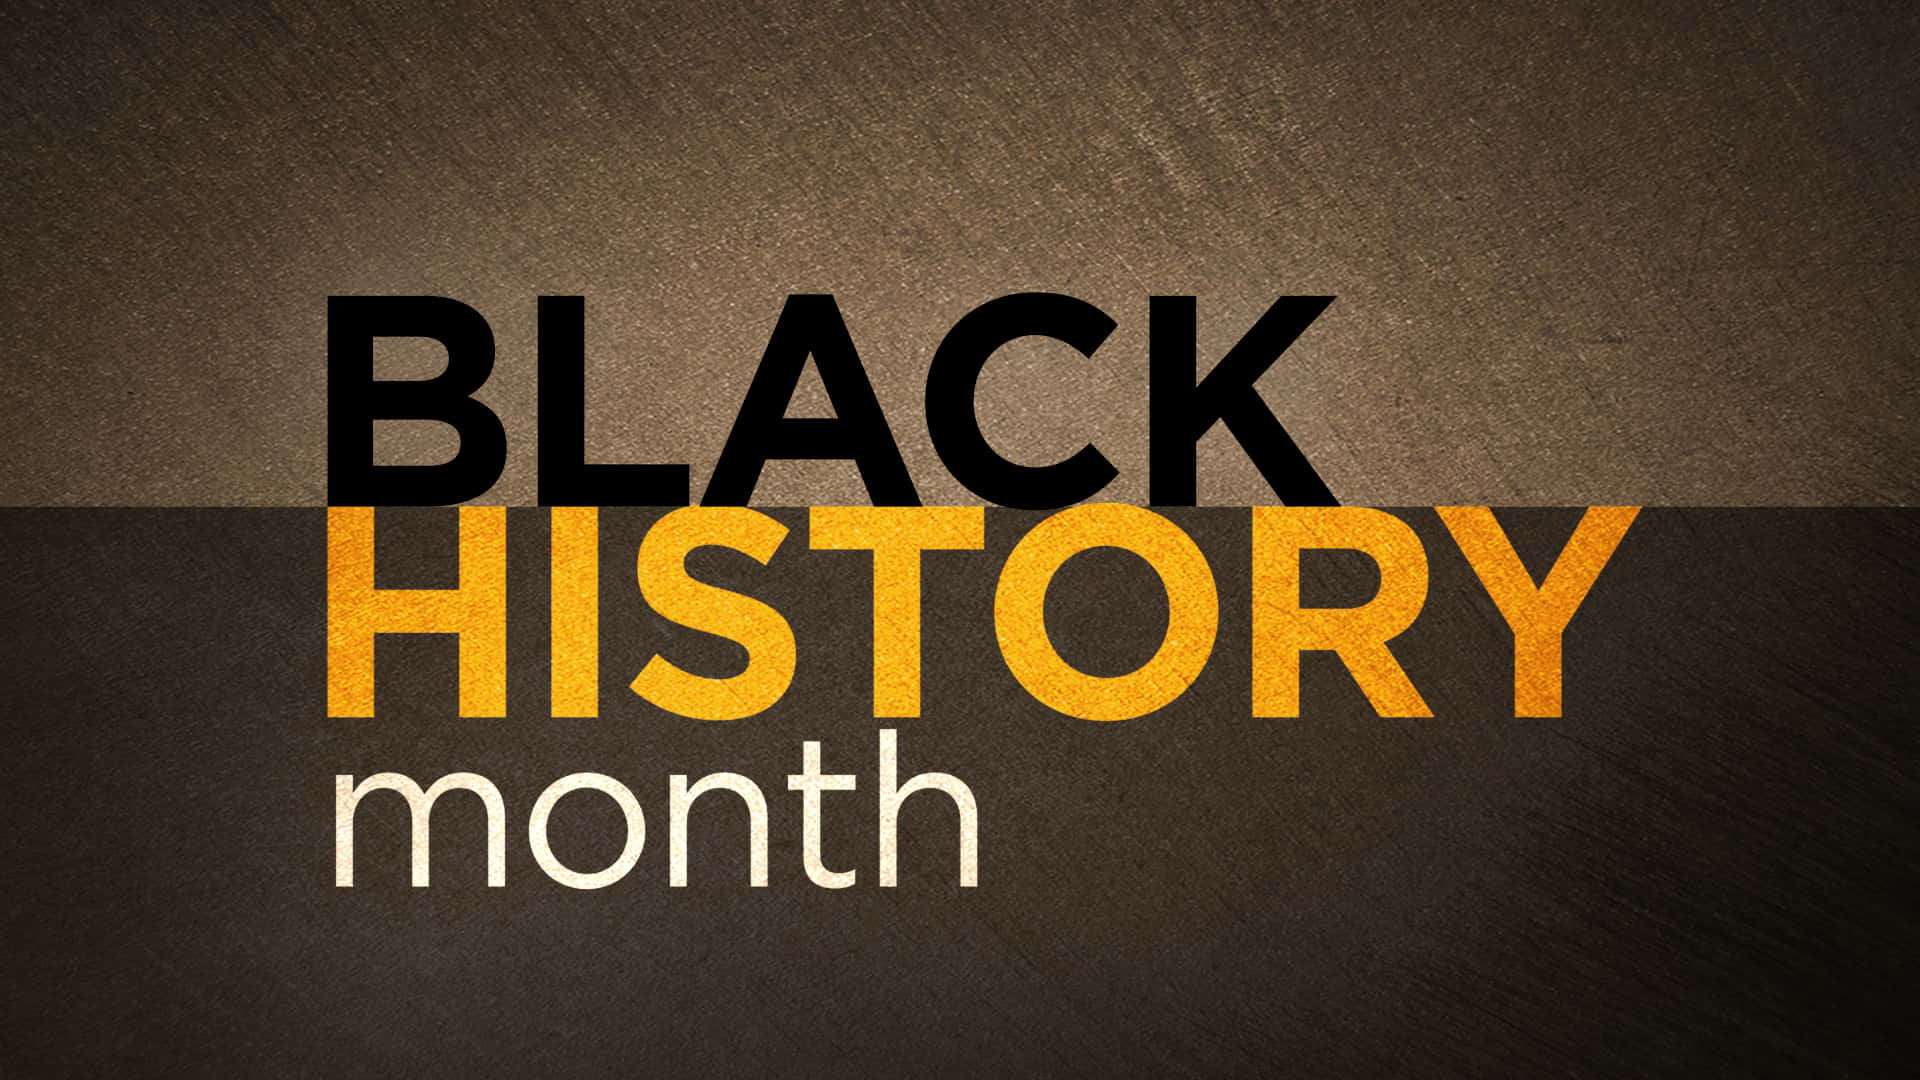 Großertypografischer Hintergrund Für Den Black History Month.